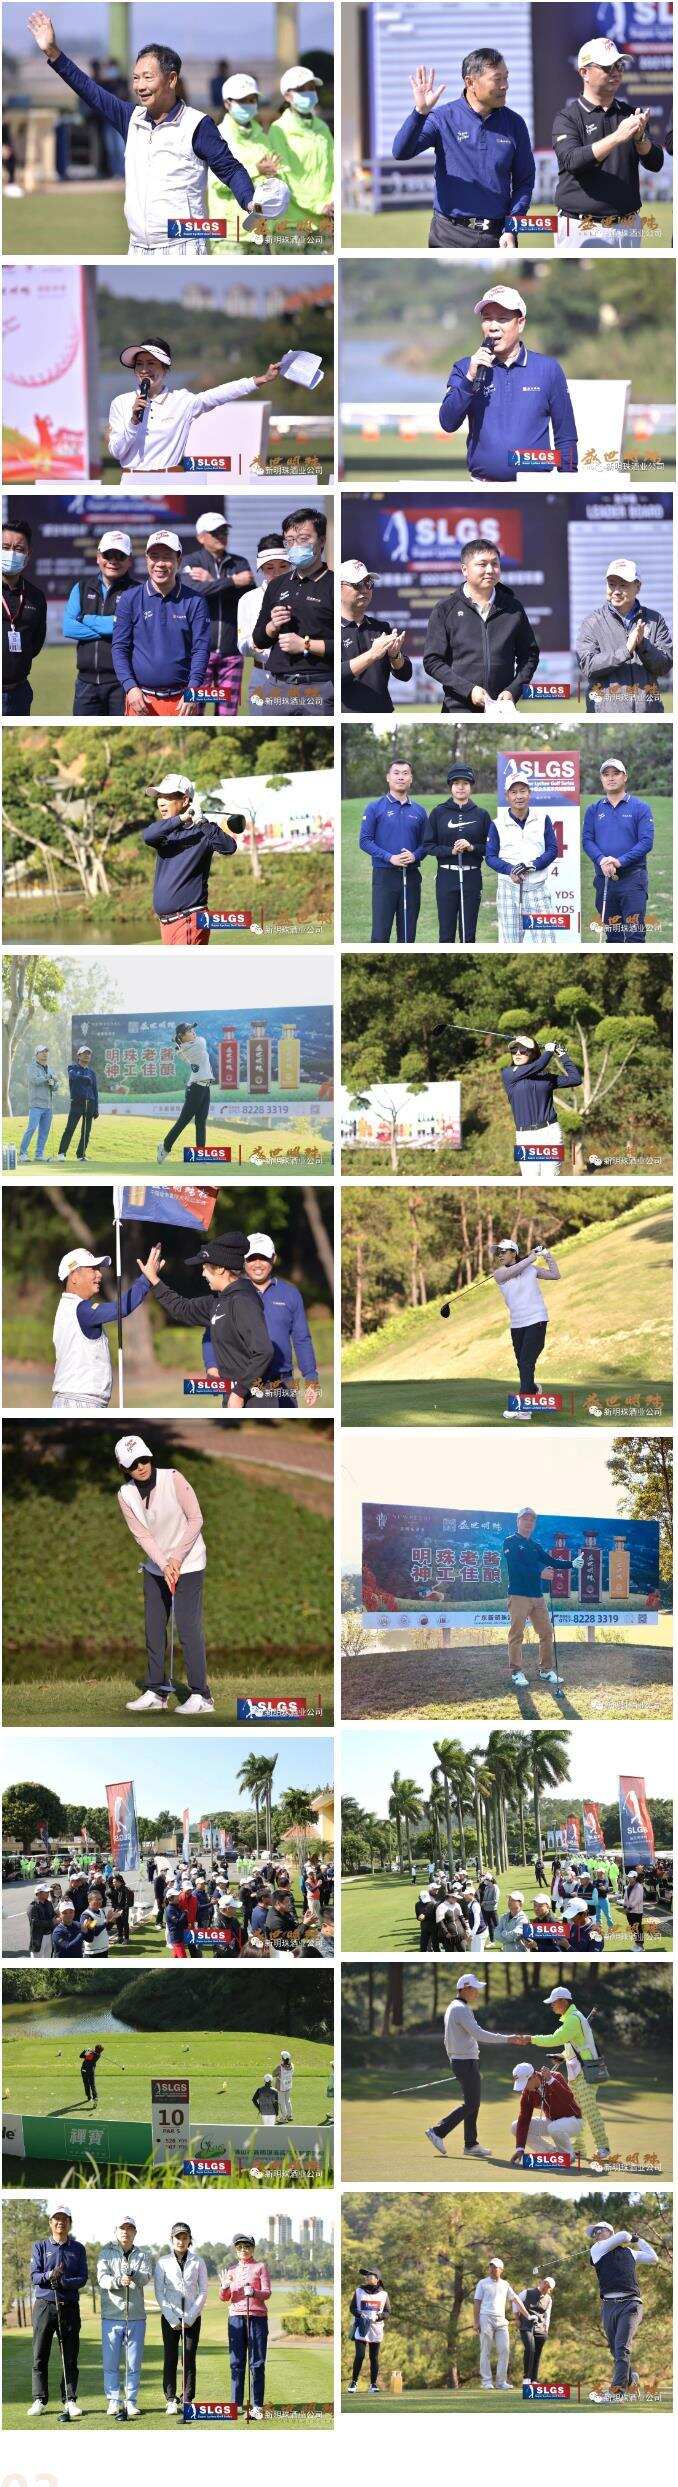 “盛世明珠杯”2021年中国业余高尔夫球赛冠军赛盛大开幕